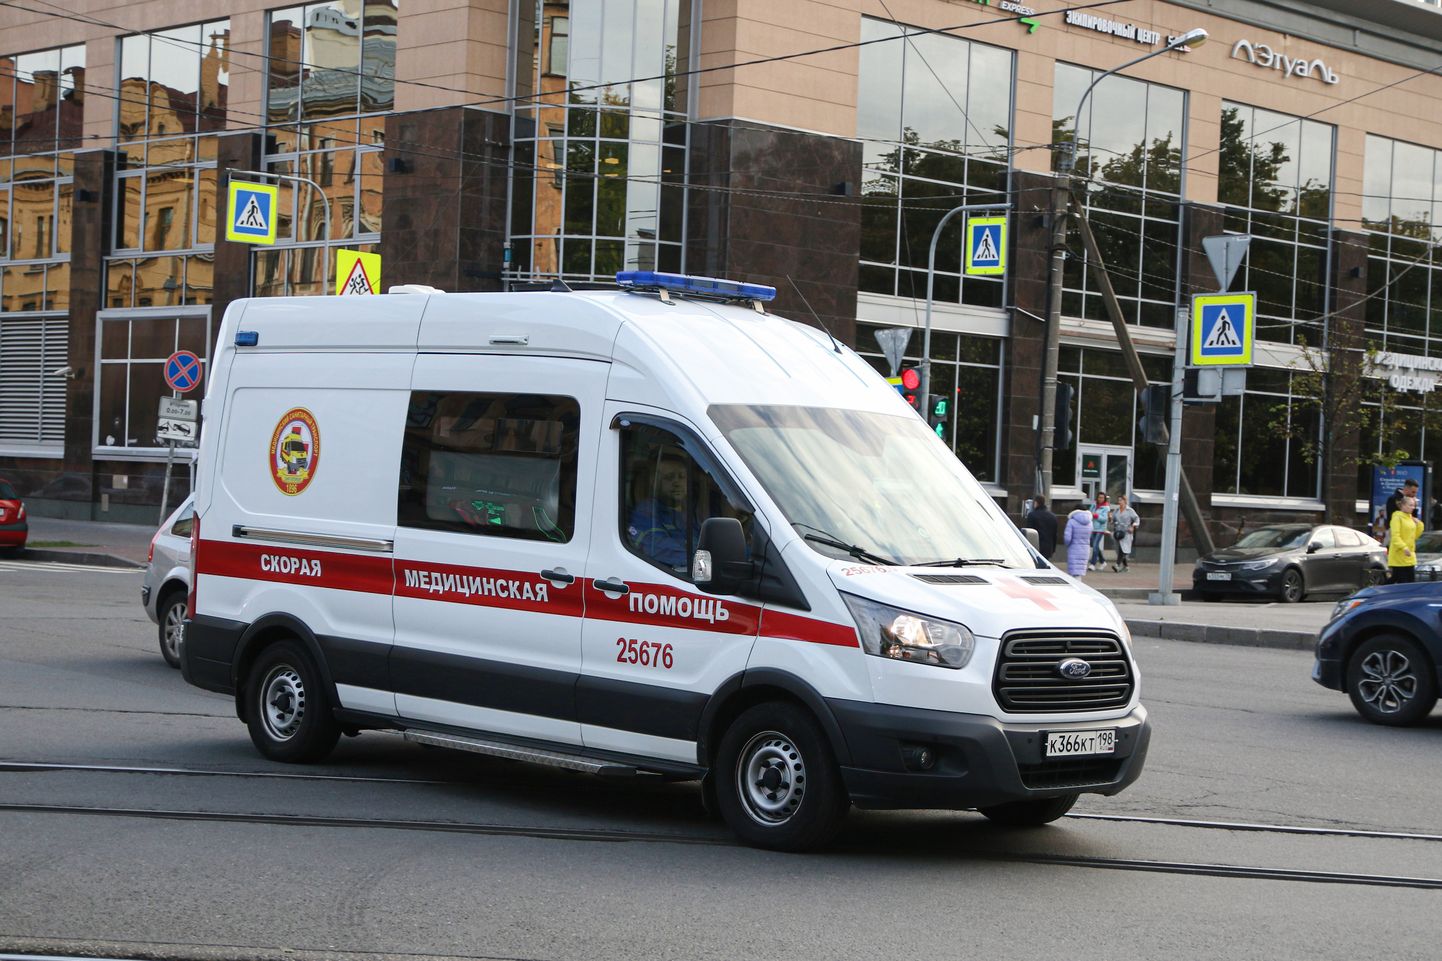 Vene kiirabiauto Peterburi tänaval. Foto on illustratiivne.